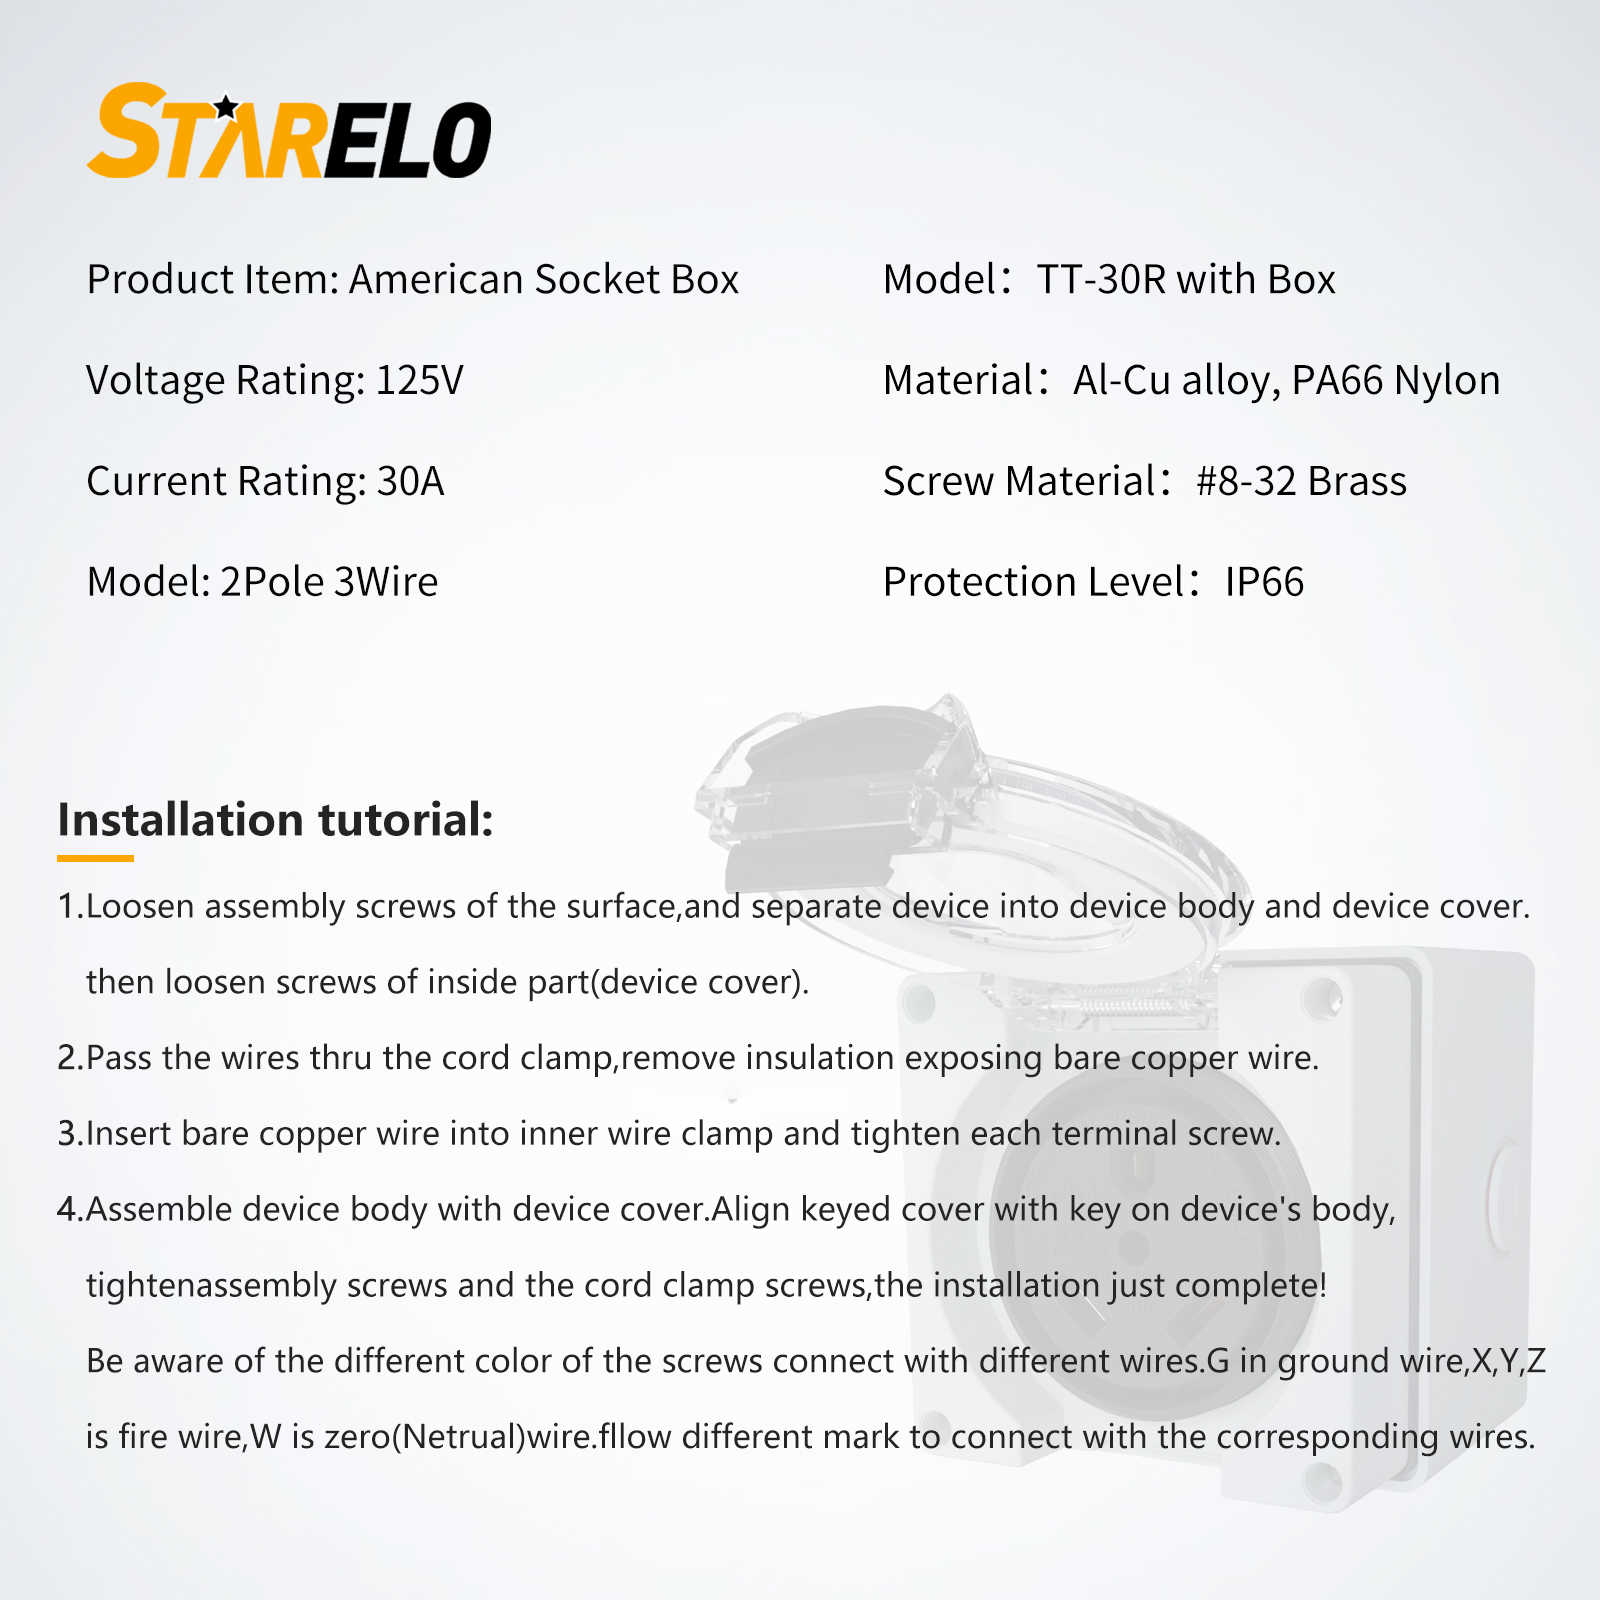 NEMA TT-30R 30Amp RV Power Outlet Box specification and installation tutorials